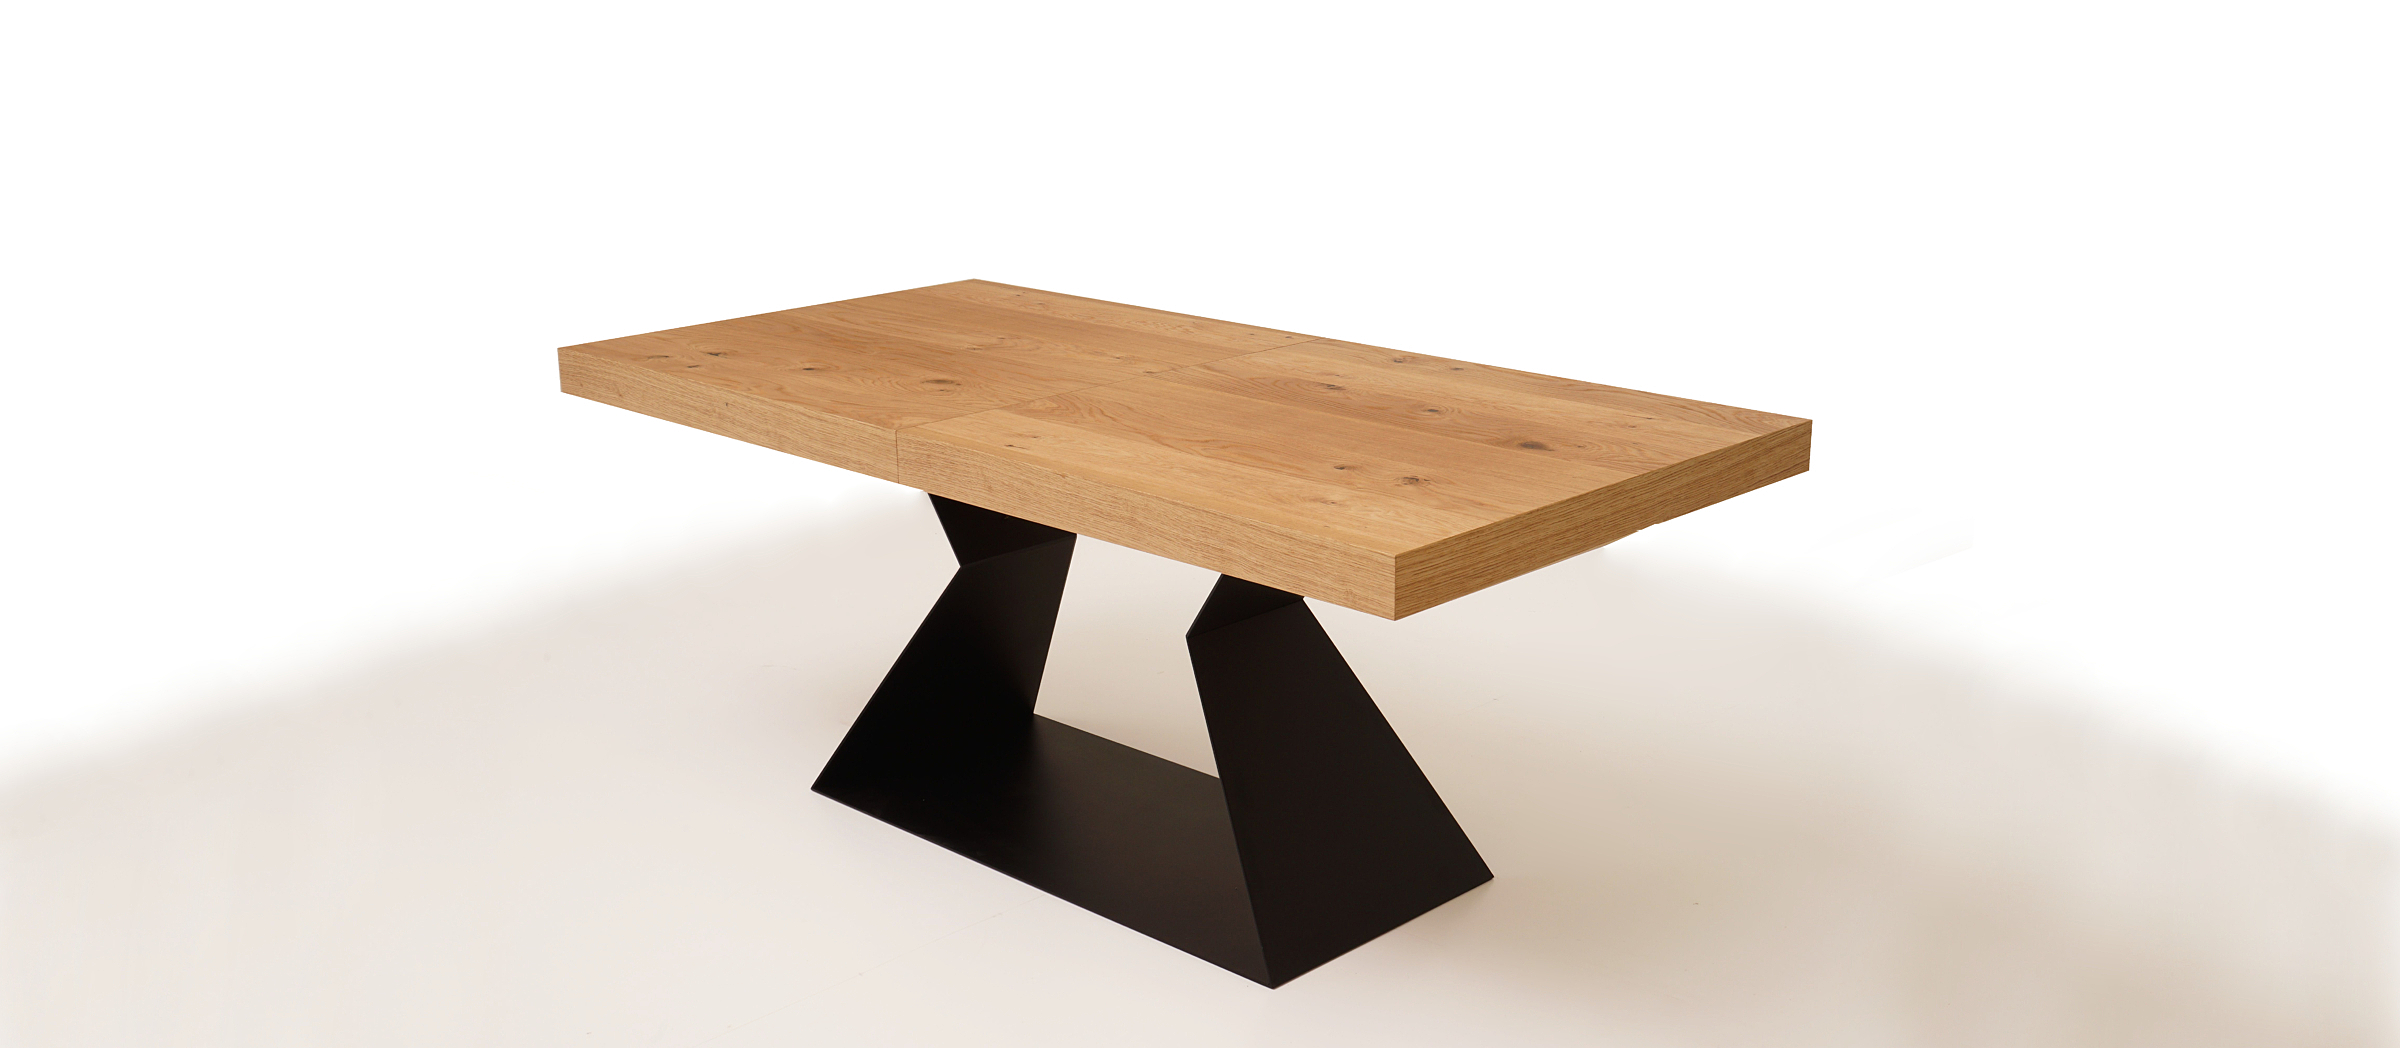 A9 designerski stół z grubym blatem fornirowanym